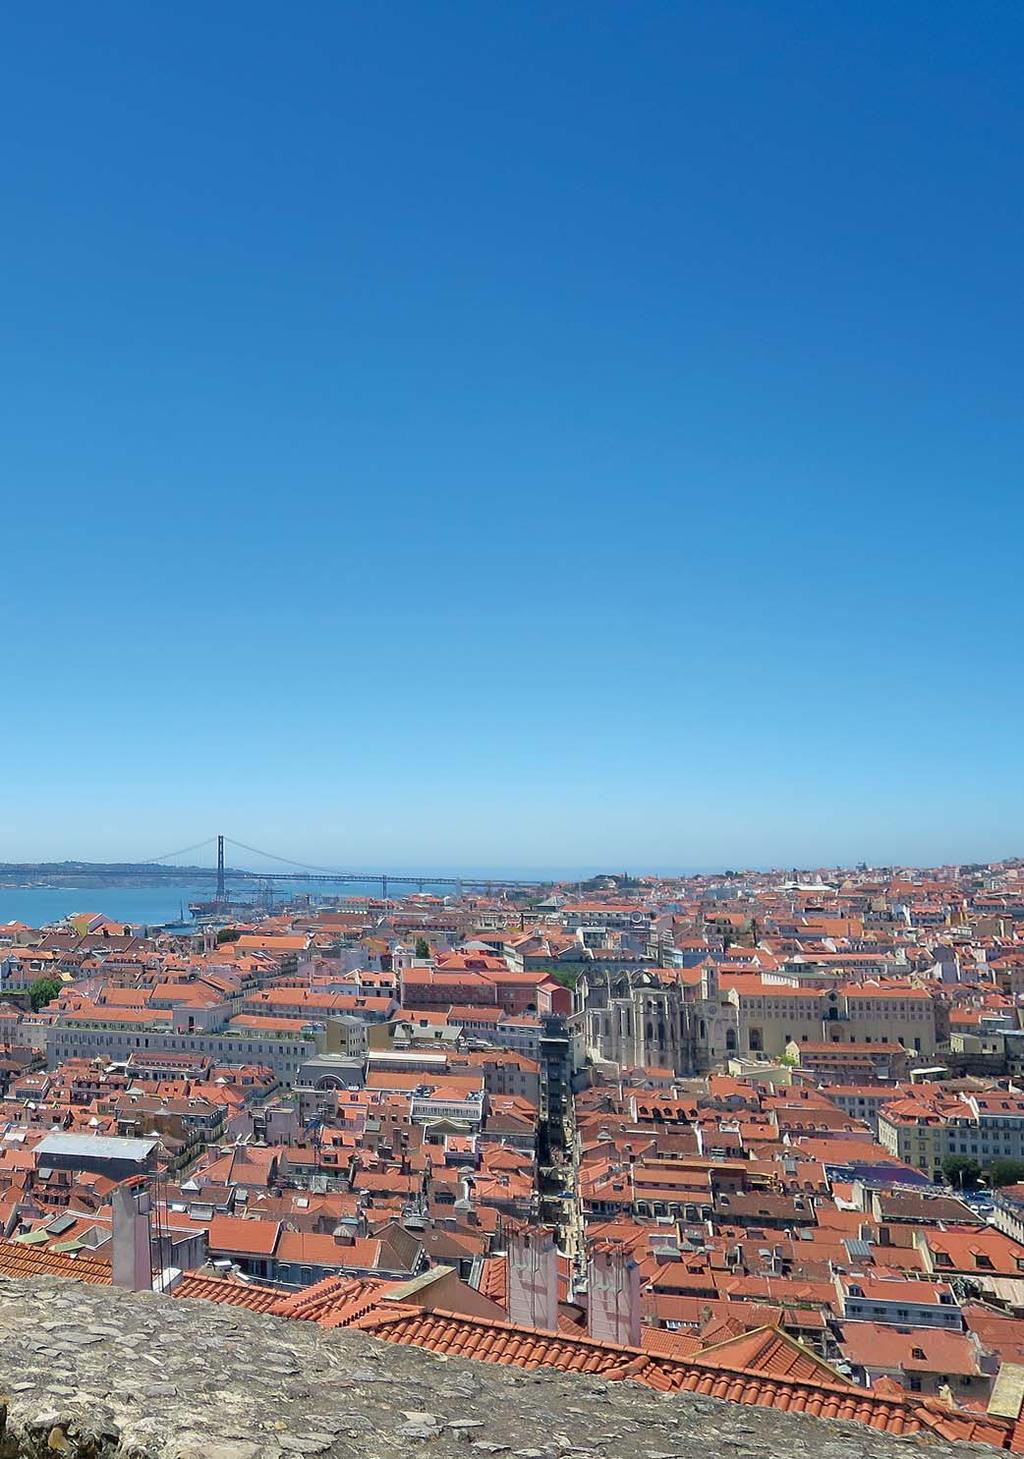 A tt naturens krafter kan ge förödande konsekvenser för både människor och bebyggelse, fick invånarna i Lissabon er fara den 1 november 1755.